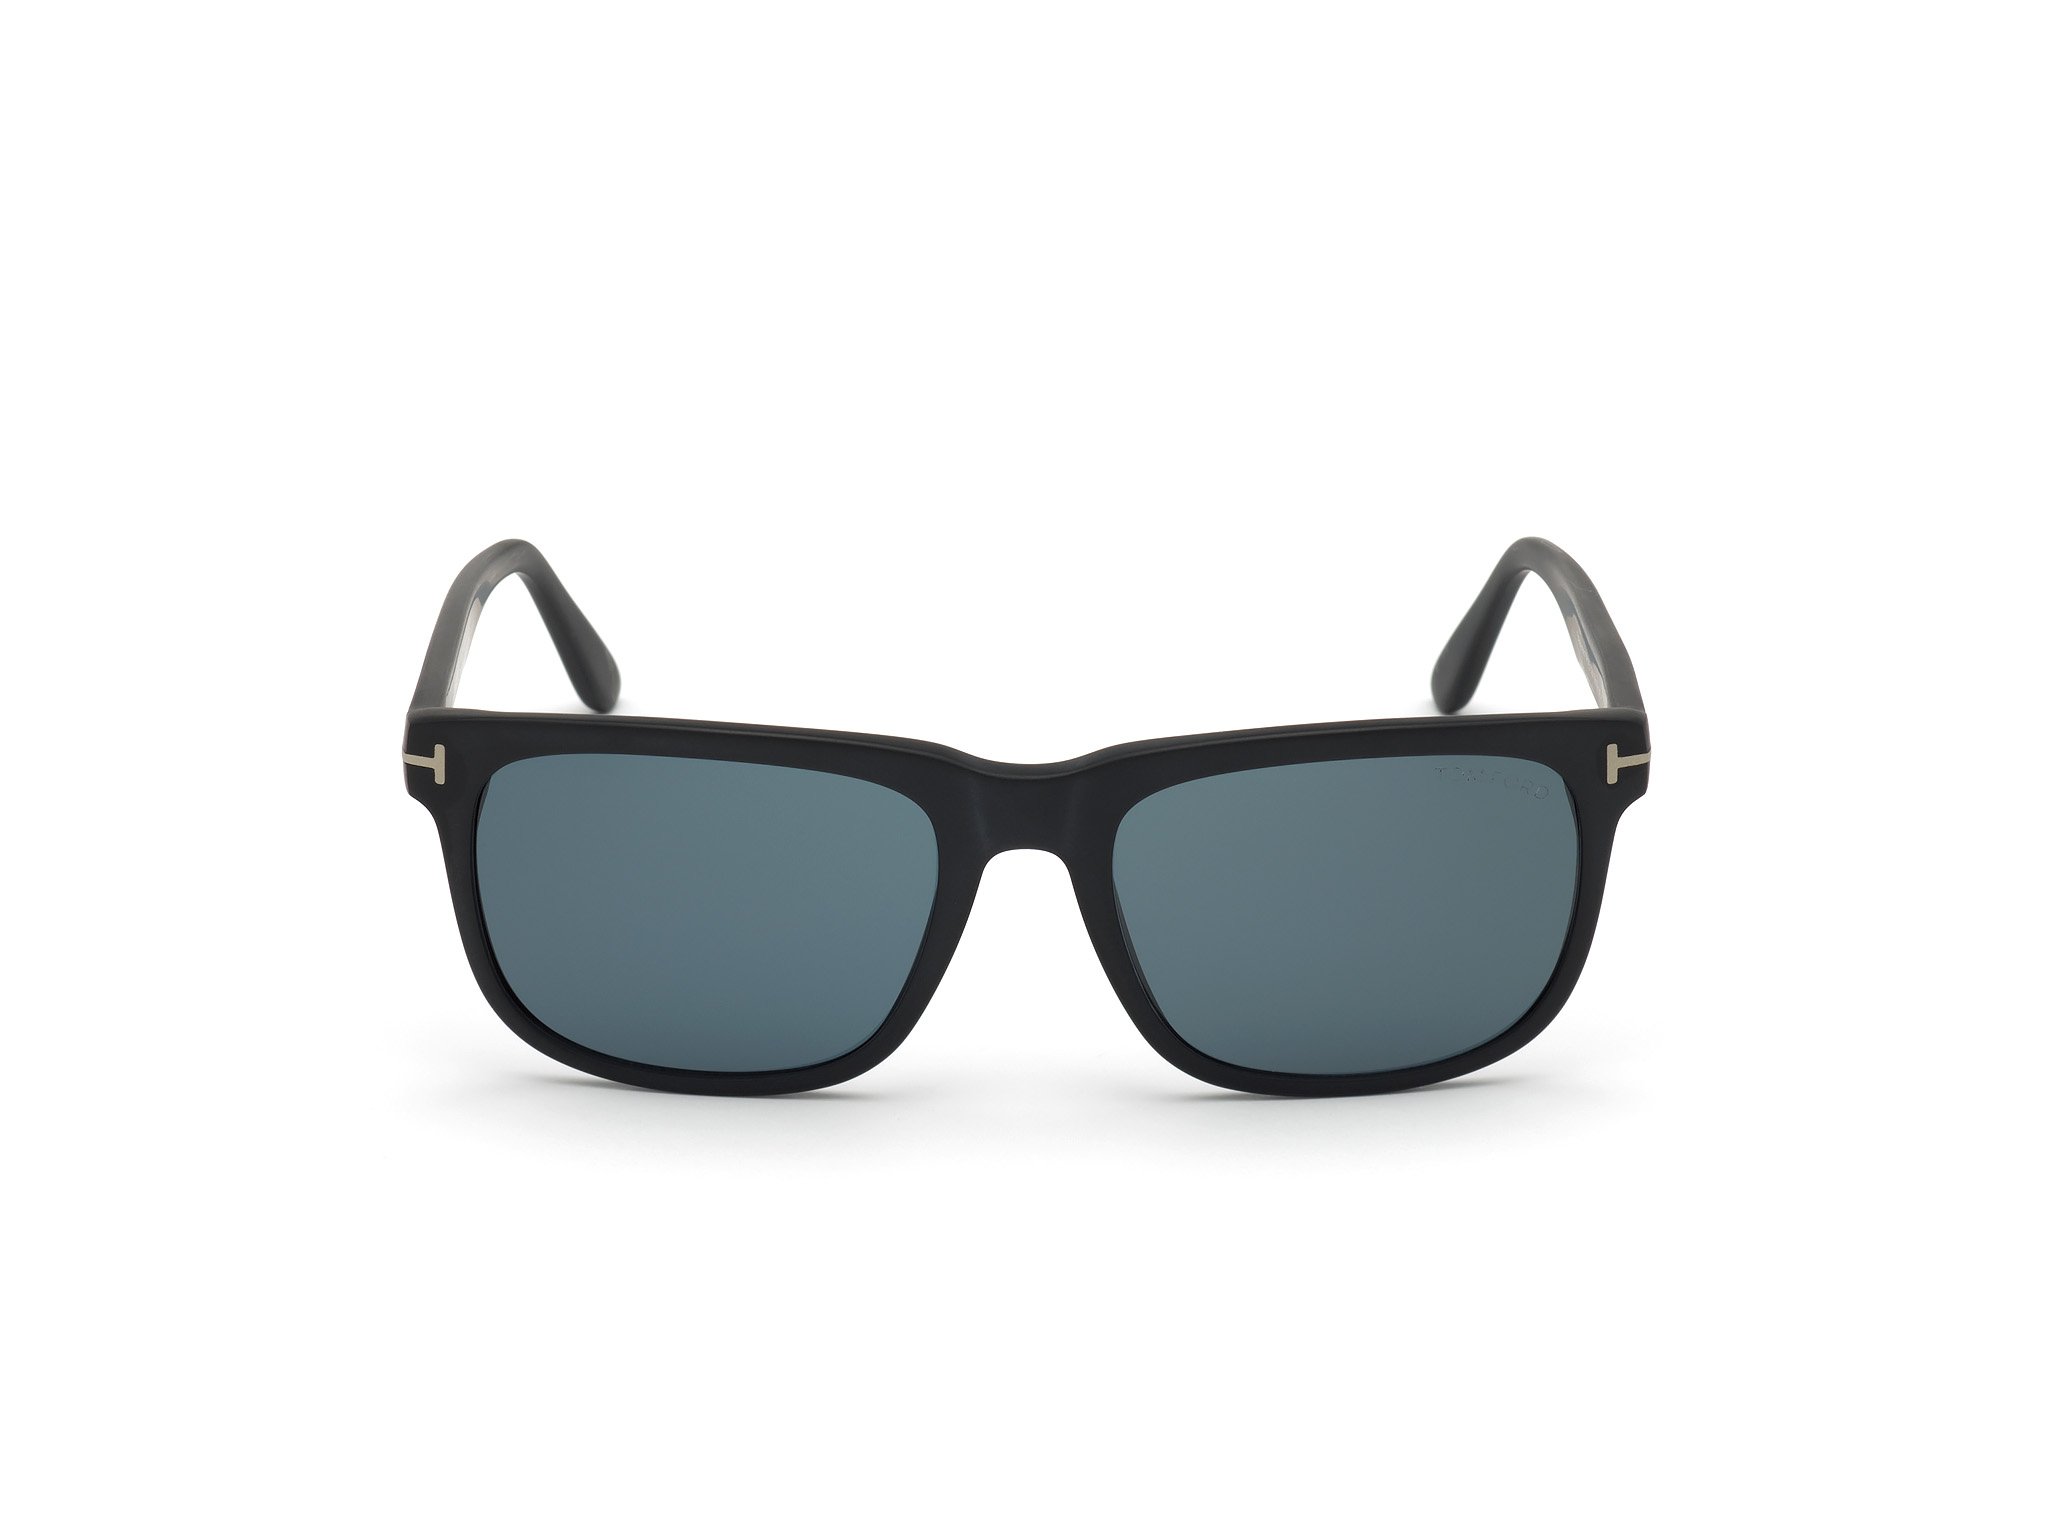 Das Bild zeigt die Sonnenbrille STEPHENSON FT0775 von der Marke Tom Ford in schwarz frontal